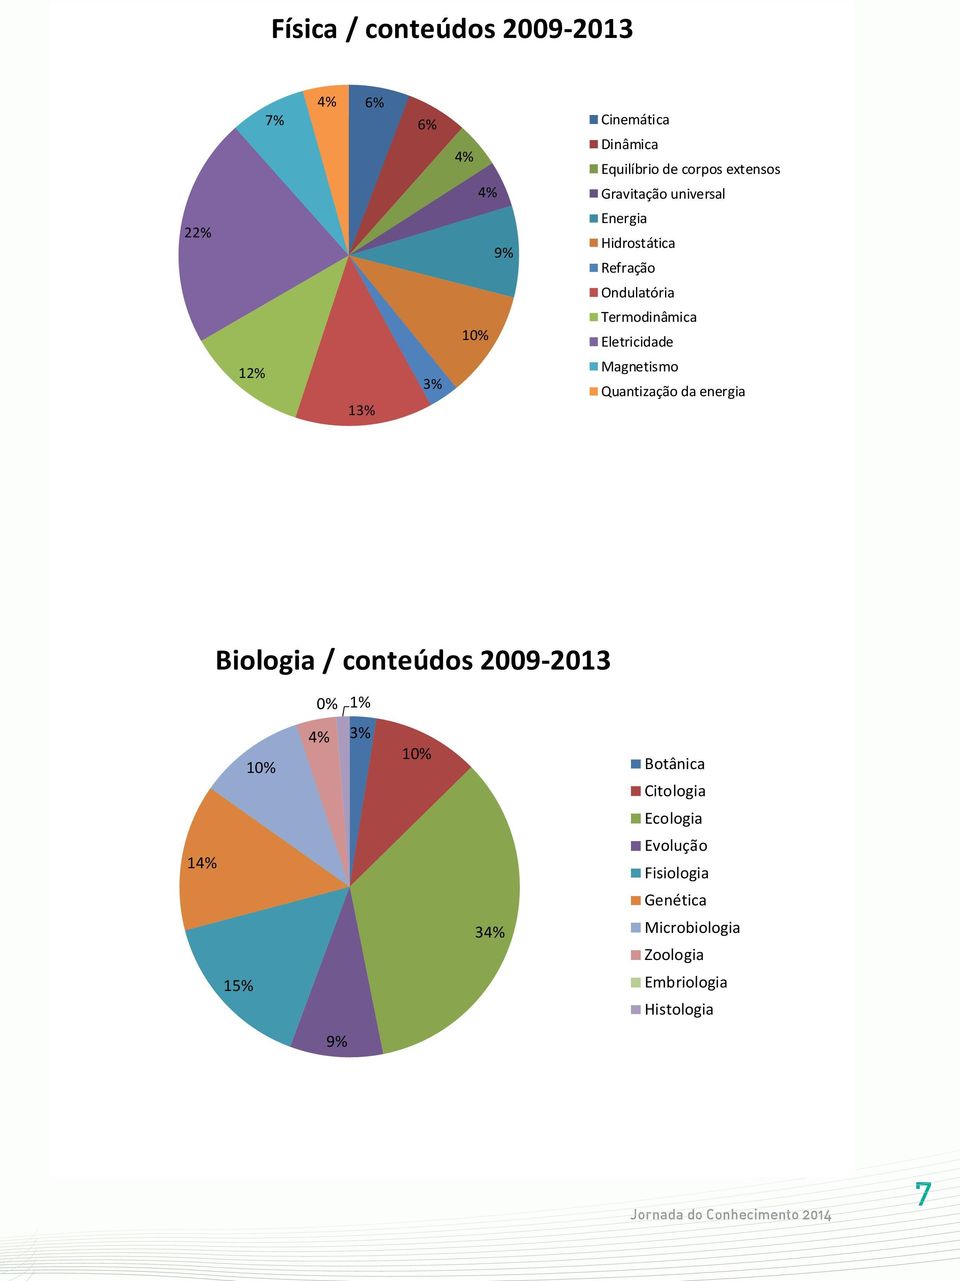 Eletricidade Magnetismo Quantização da energia Biologia / conteúdos 2009-2013 0% 1% 10% 10%